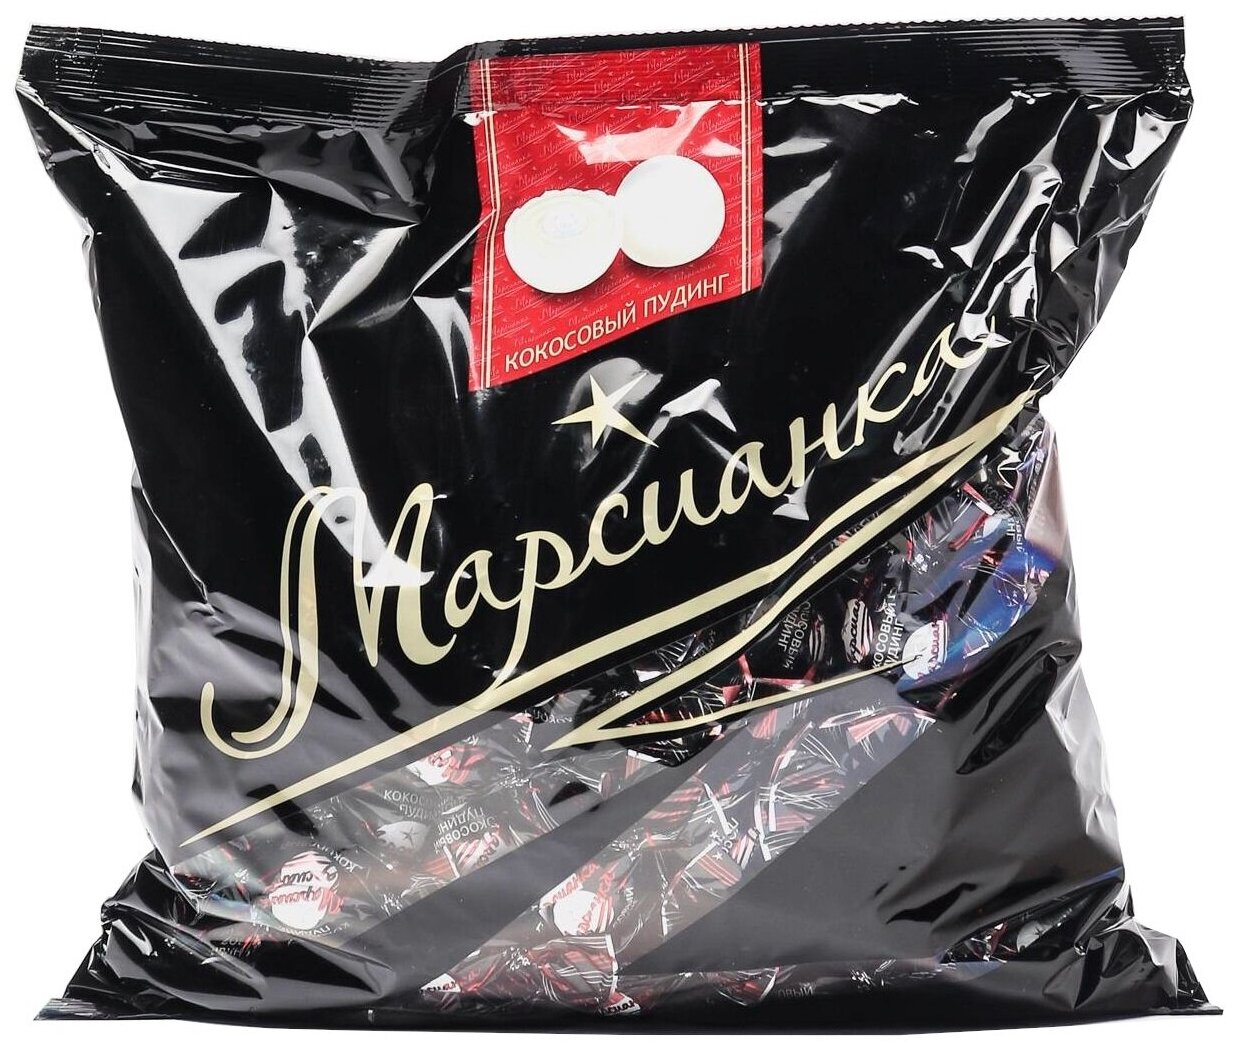 Конфеты Марсианка Кокосовый пудинг, 1 кг - фотография № 1